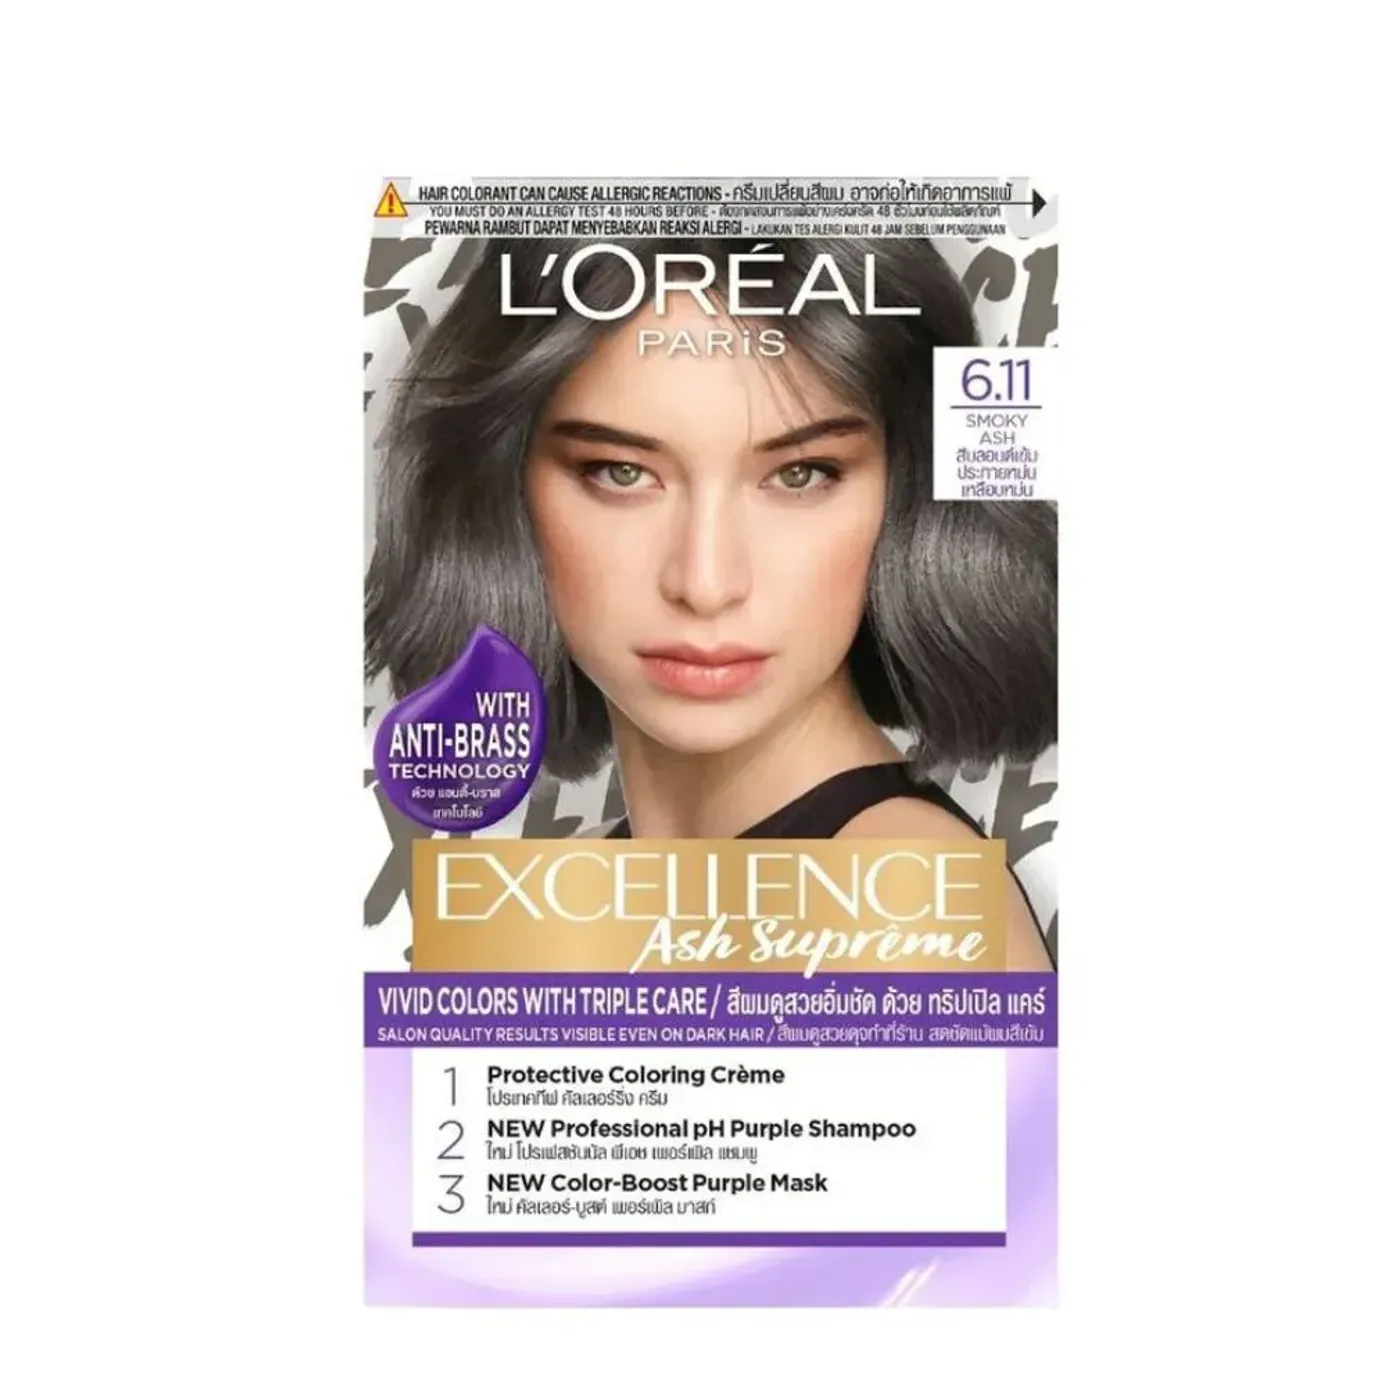 Với nhuộm tóc Loreal 6.11, bạn sẽ tỏa sáng với mái tóc óng ả, mịn màng như nhung. Màu đen đặc biệt cùng công thức chăm sóc độc quyền giúp bảo vệ và nuôi dưỡng tóc, khôi phục độ sáng và độ mượt cho mái tóc của bạn.